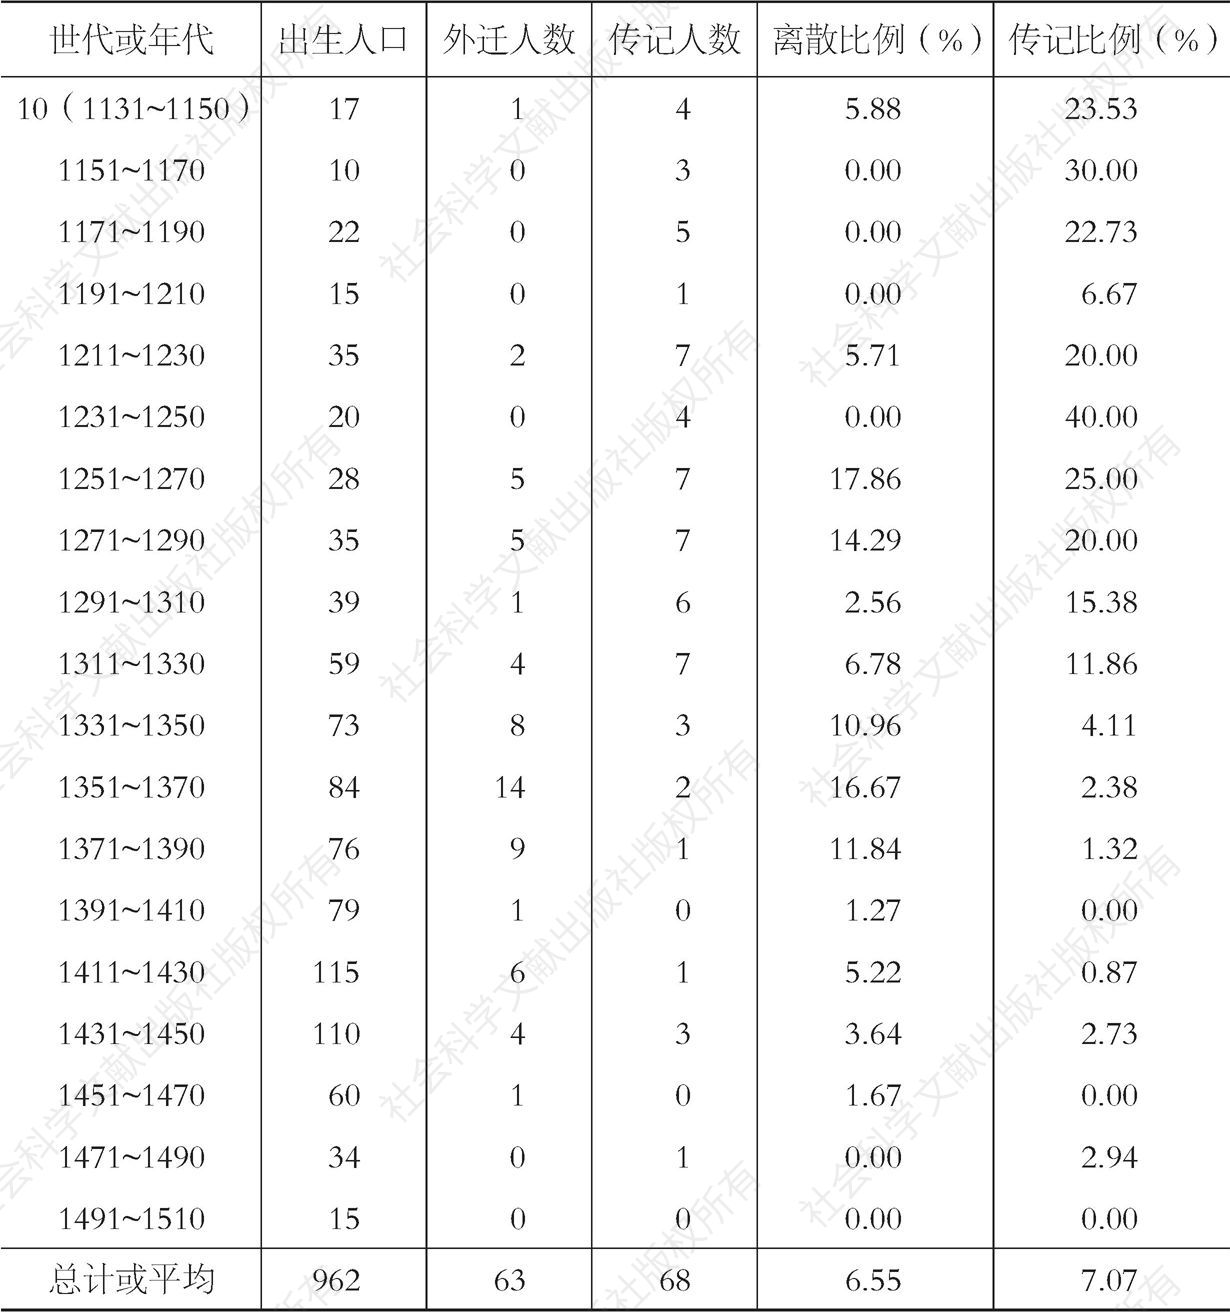 表10-8 苍坡李氏世代或年代离散率与传记率-续表